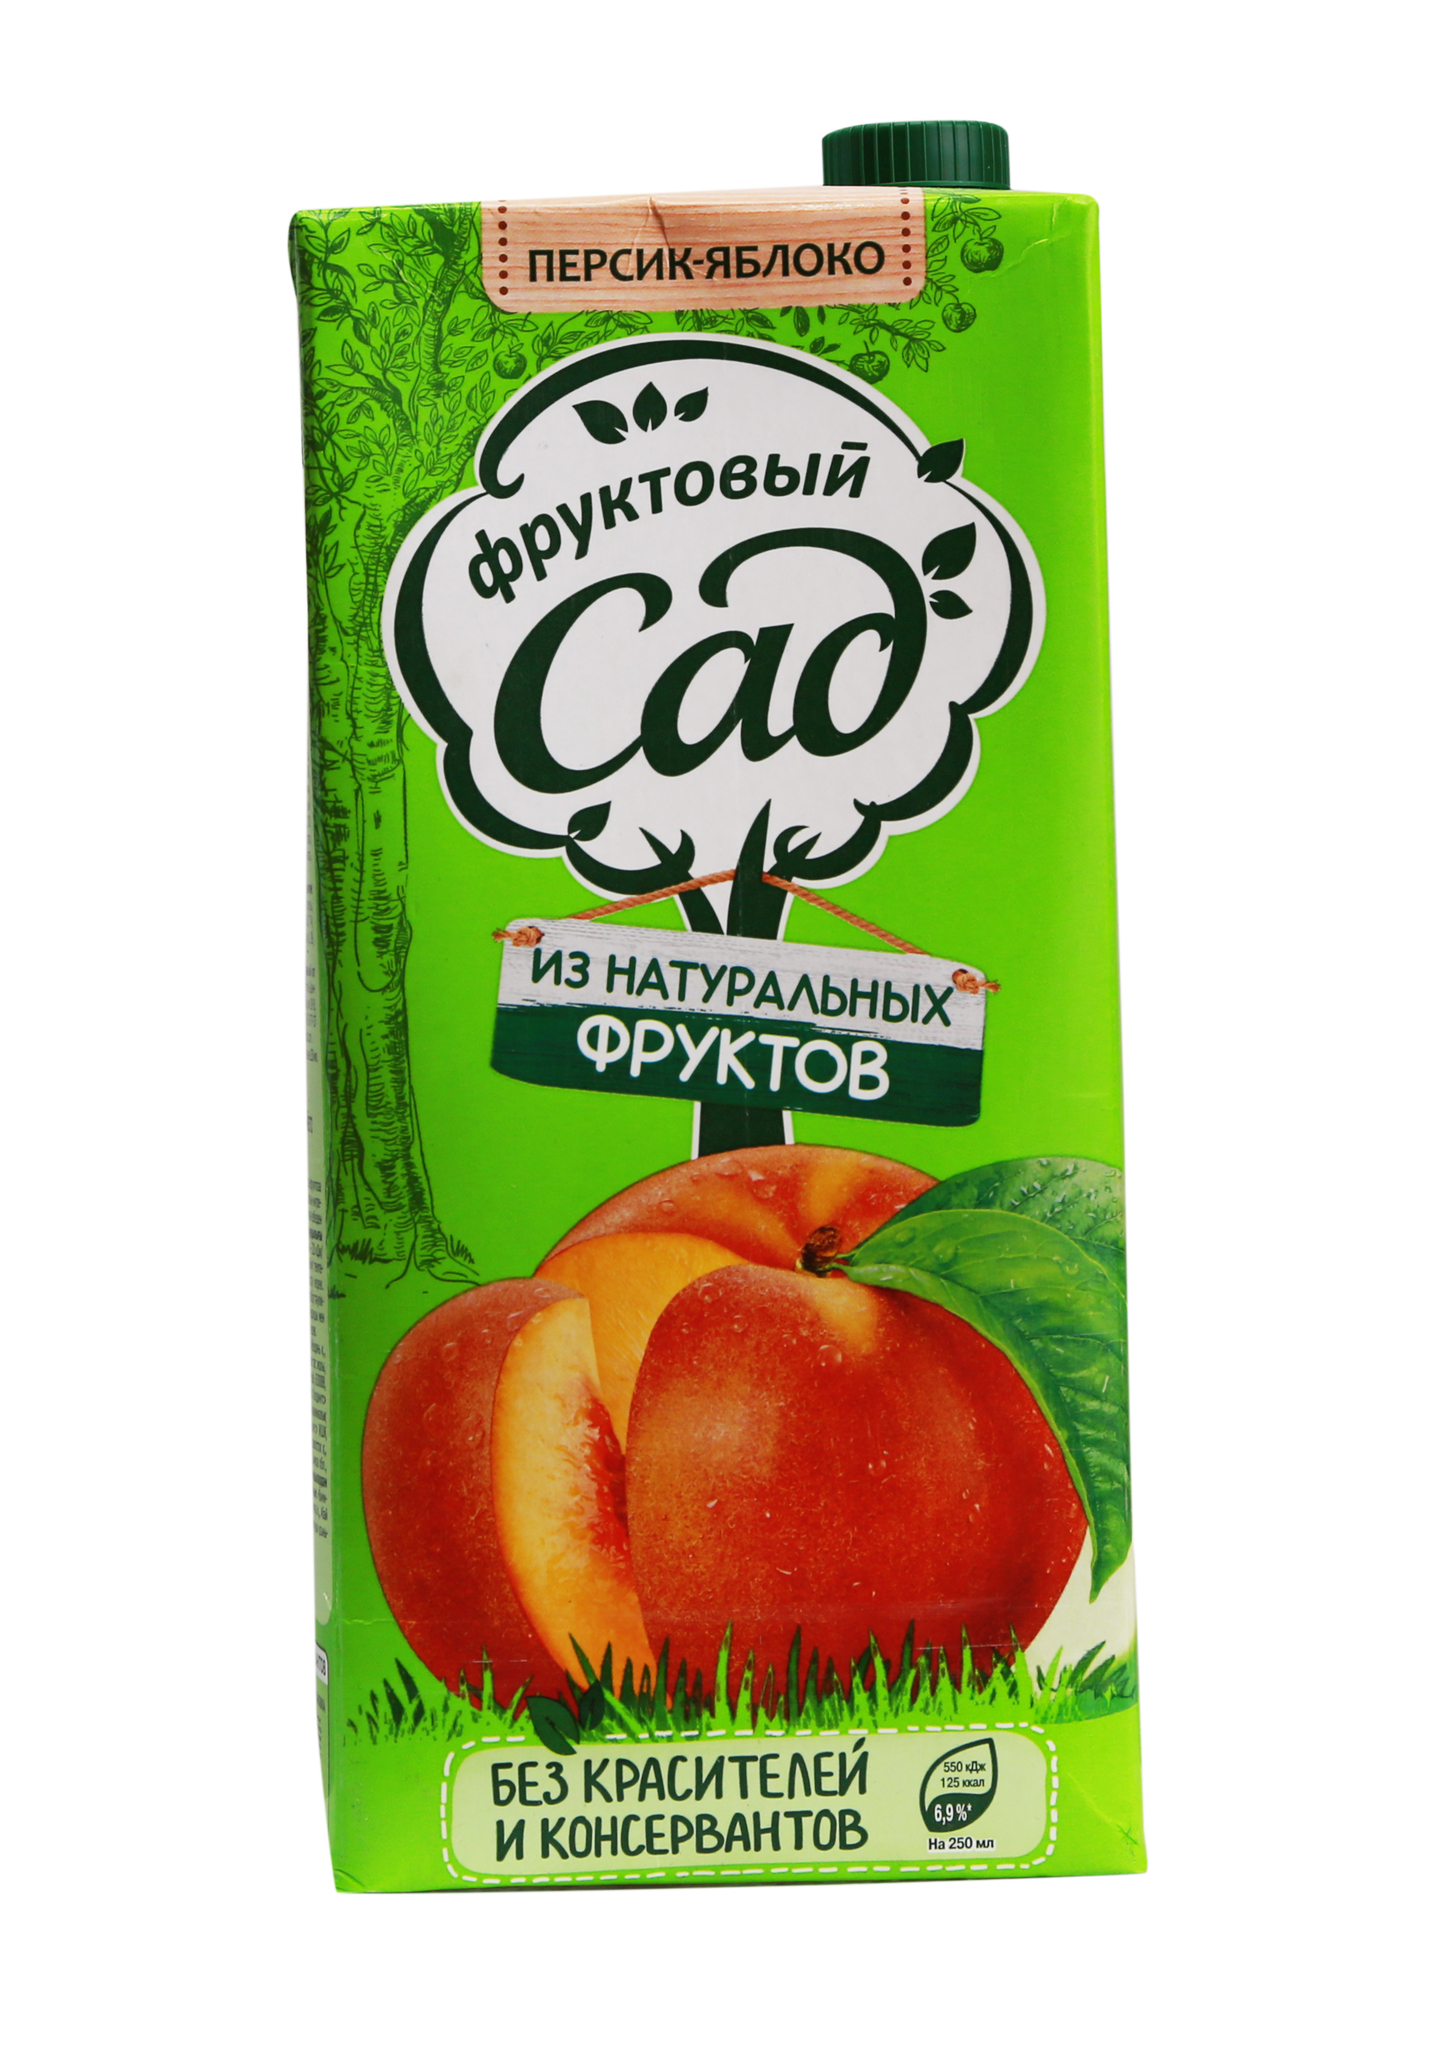 Сок Фруктовый сад яблочный из кафе Пироговый Дворик – фото, объём, цена